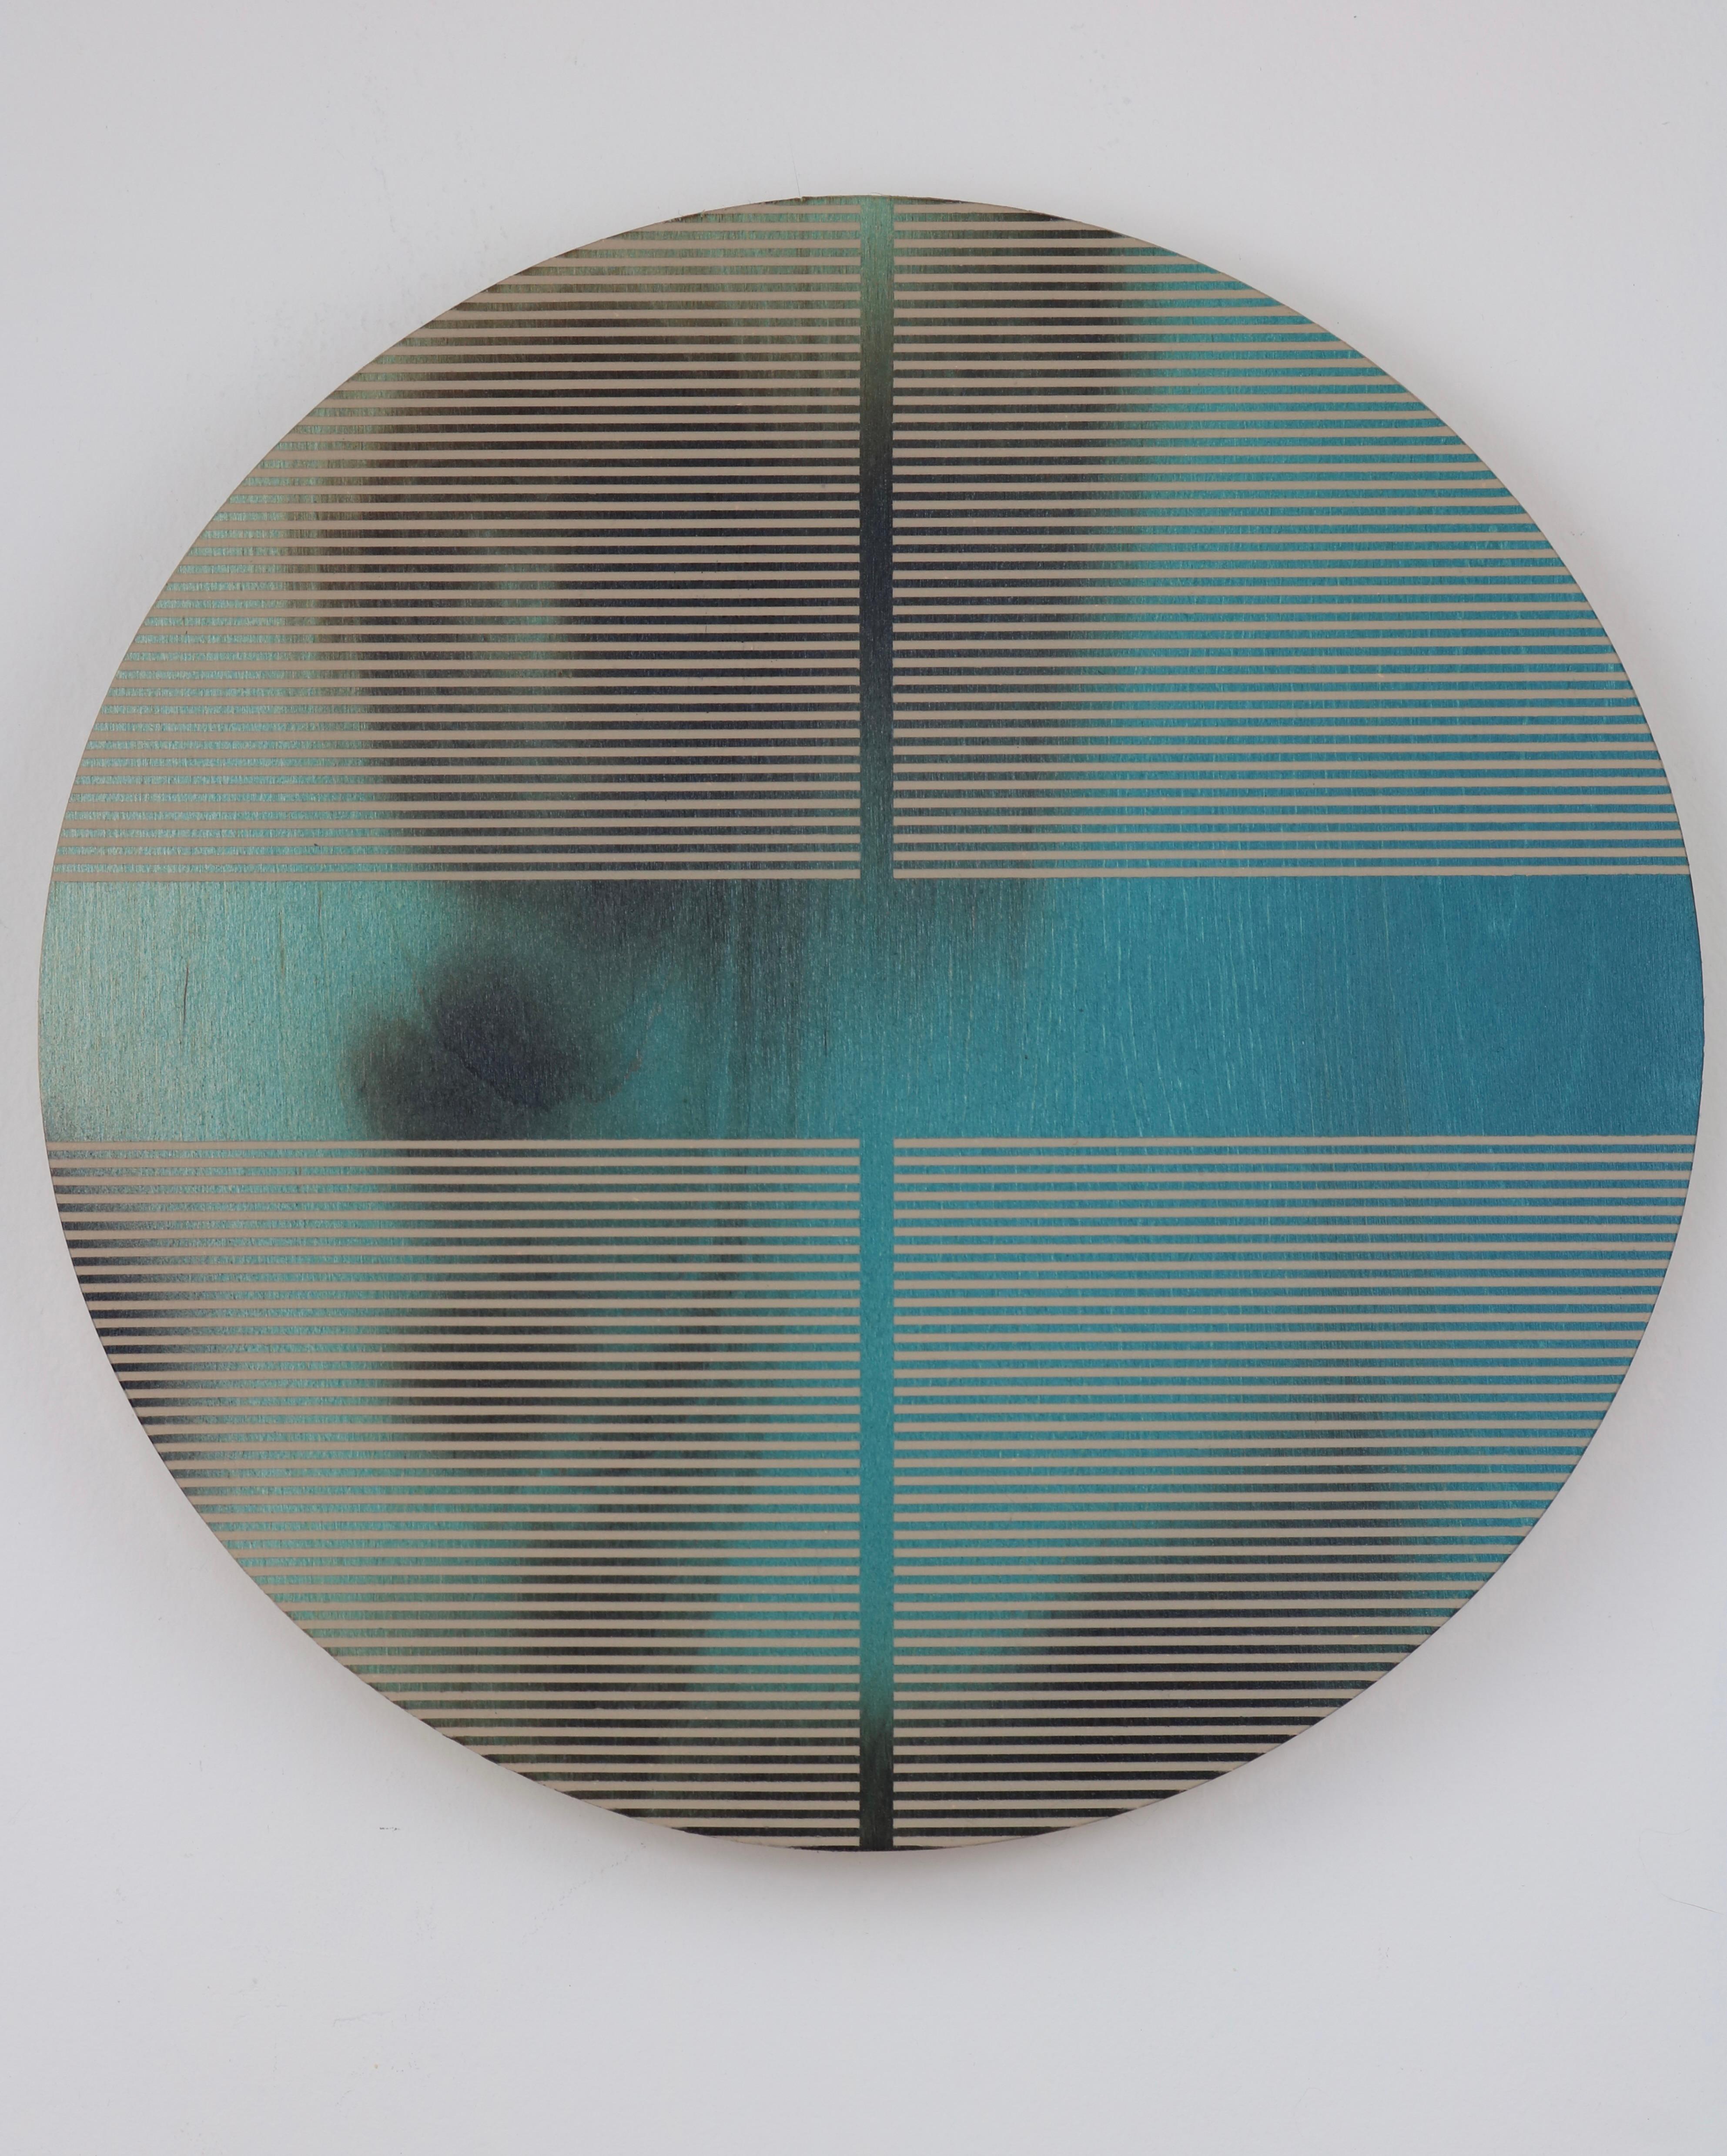 Pazifische Meeresblaue Pille aus dem Pazifischen Ozean (minimalistisches, rundes Gemälde auf Holz, dopamine-Kunst) – Mixed Media Art von Melisa Taylor Metzger